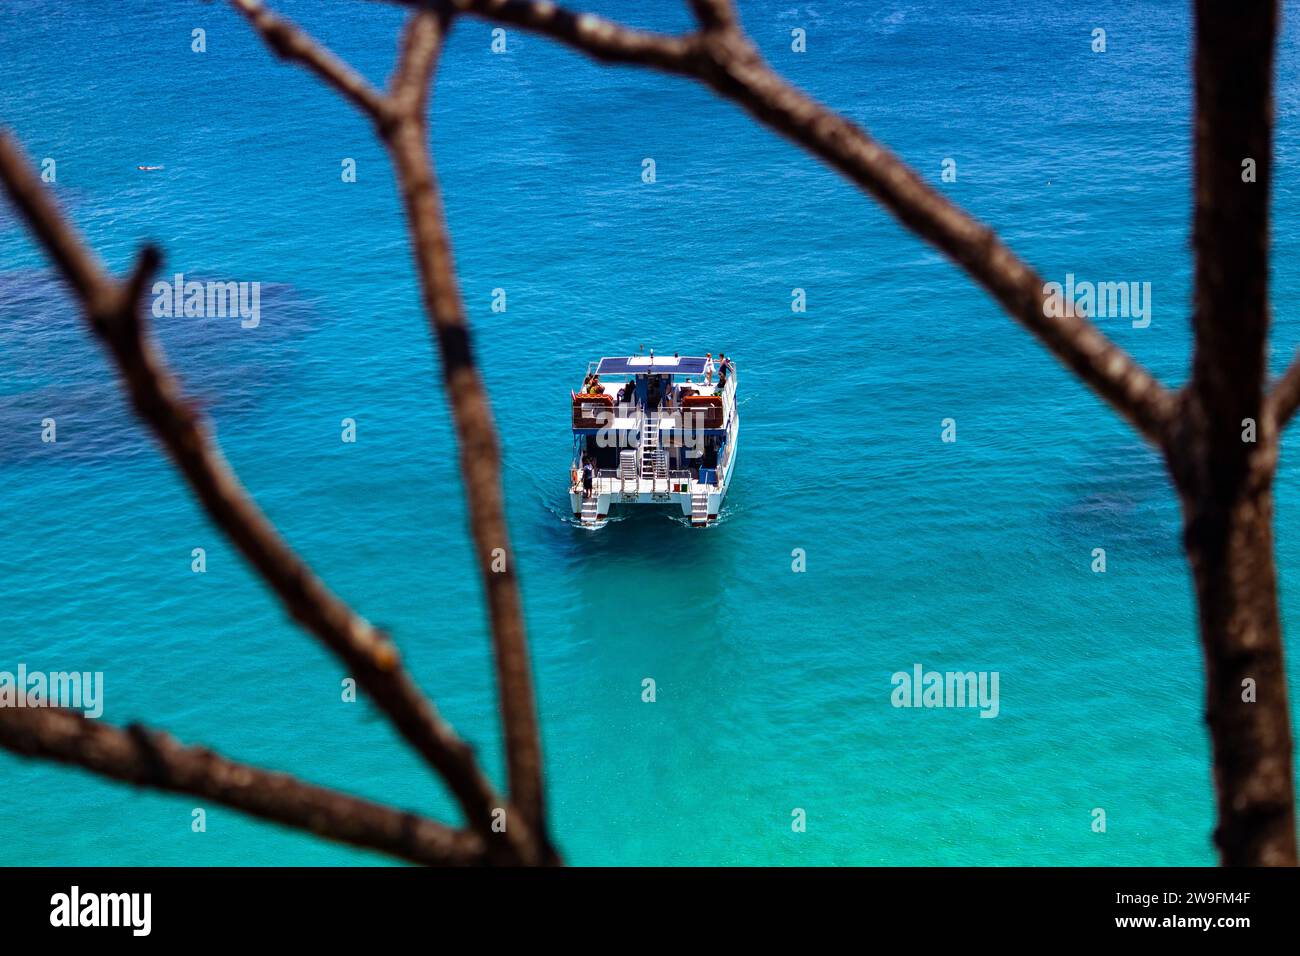 Tourists prepare to dive at Sancho Beach in Fernando de Noronha, Brazil Stock Photo